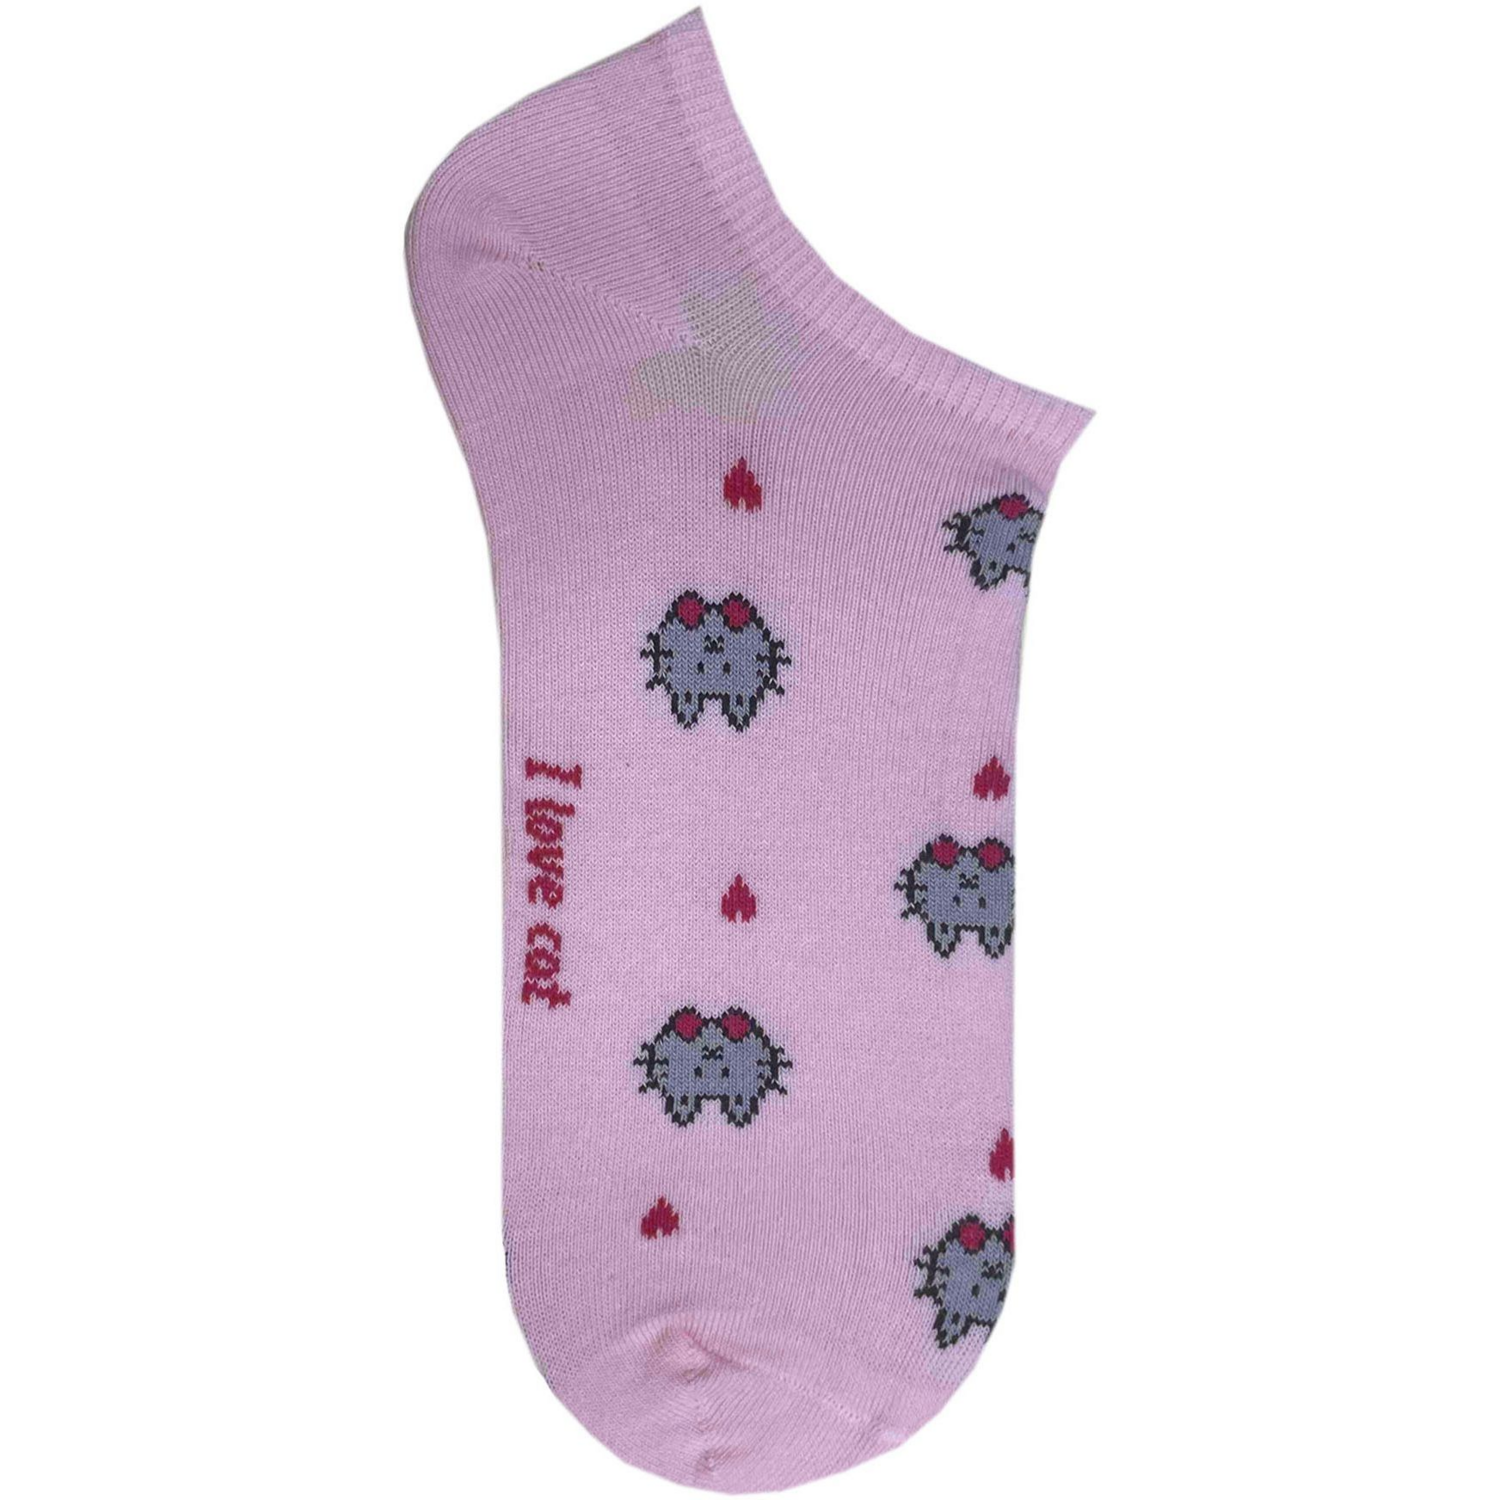 Носки женские Premier Socks 36-40 1 пара розовые с принтом Коты (4820163318899)фото